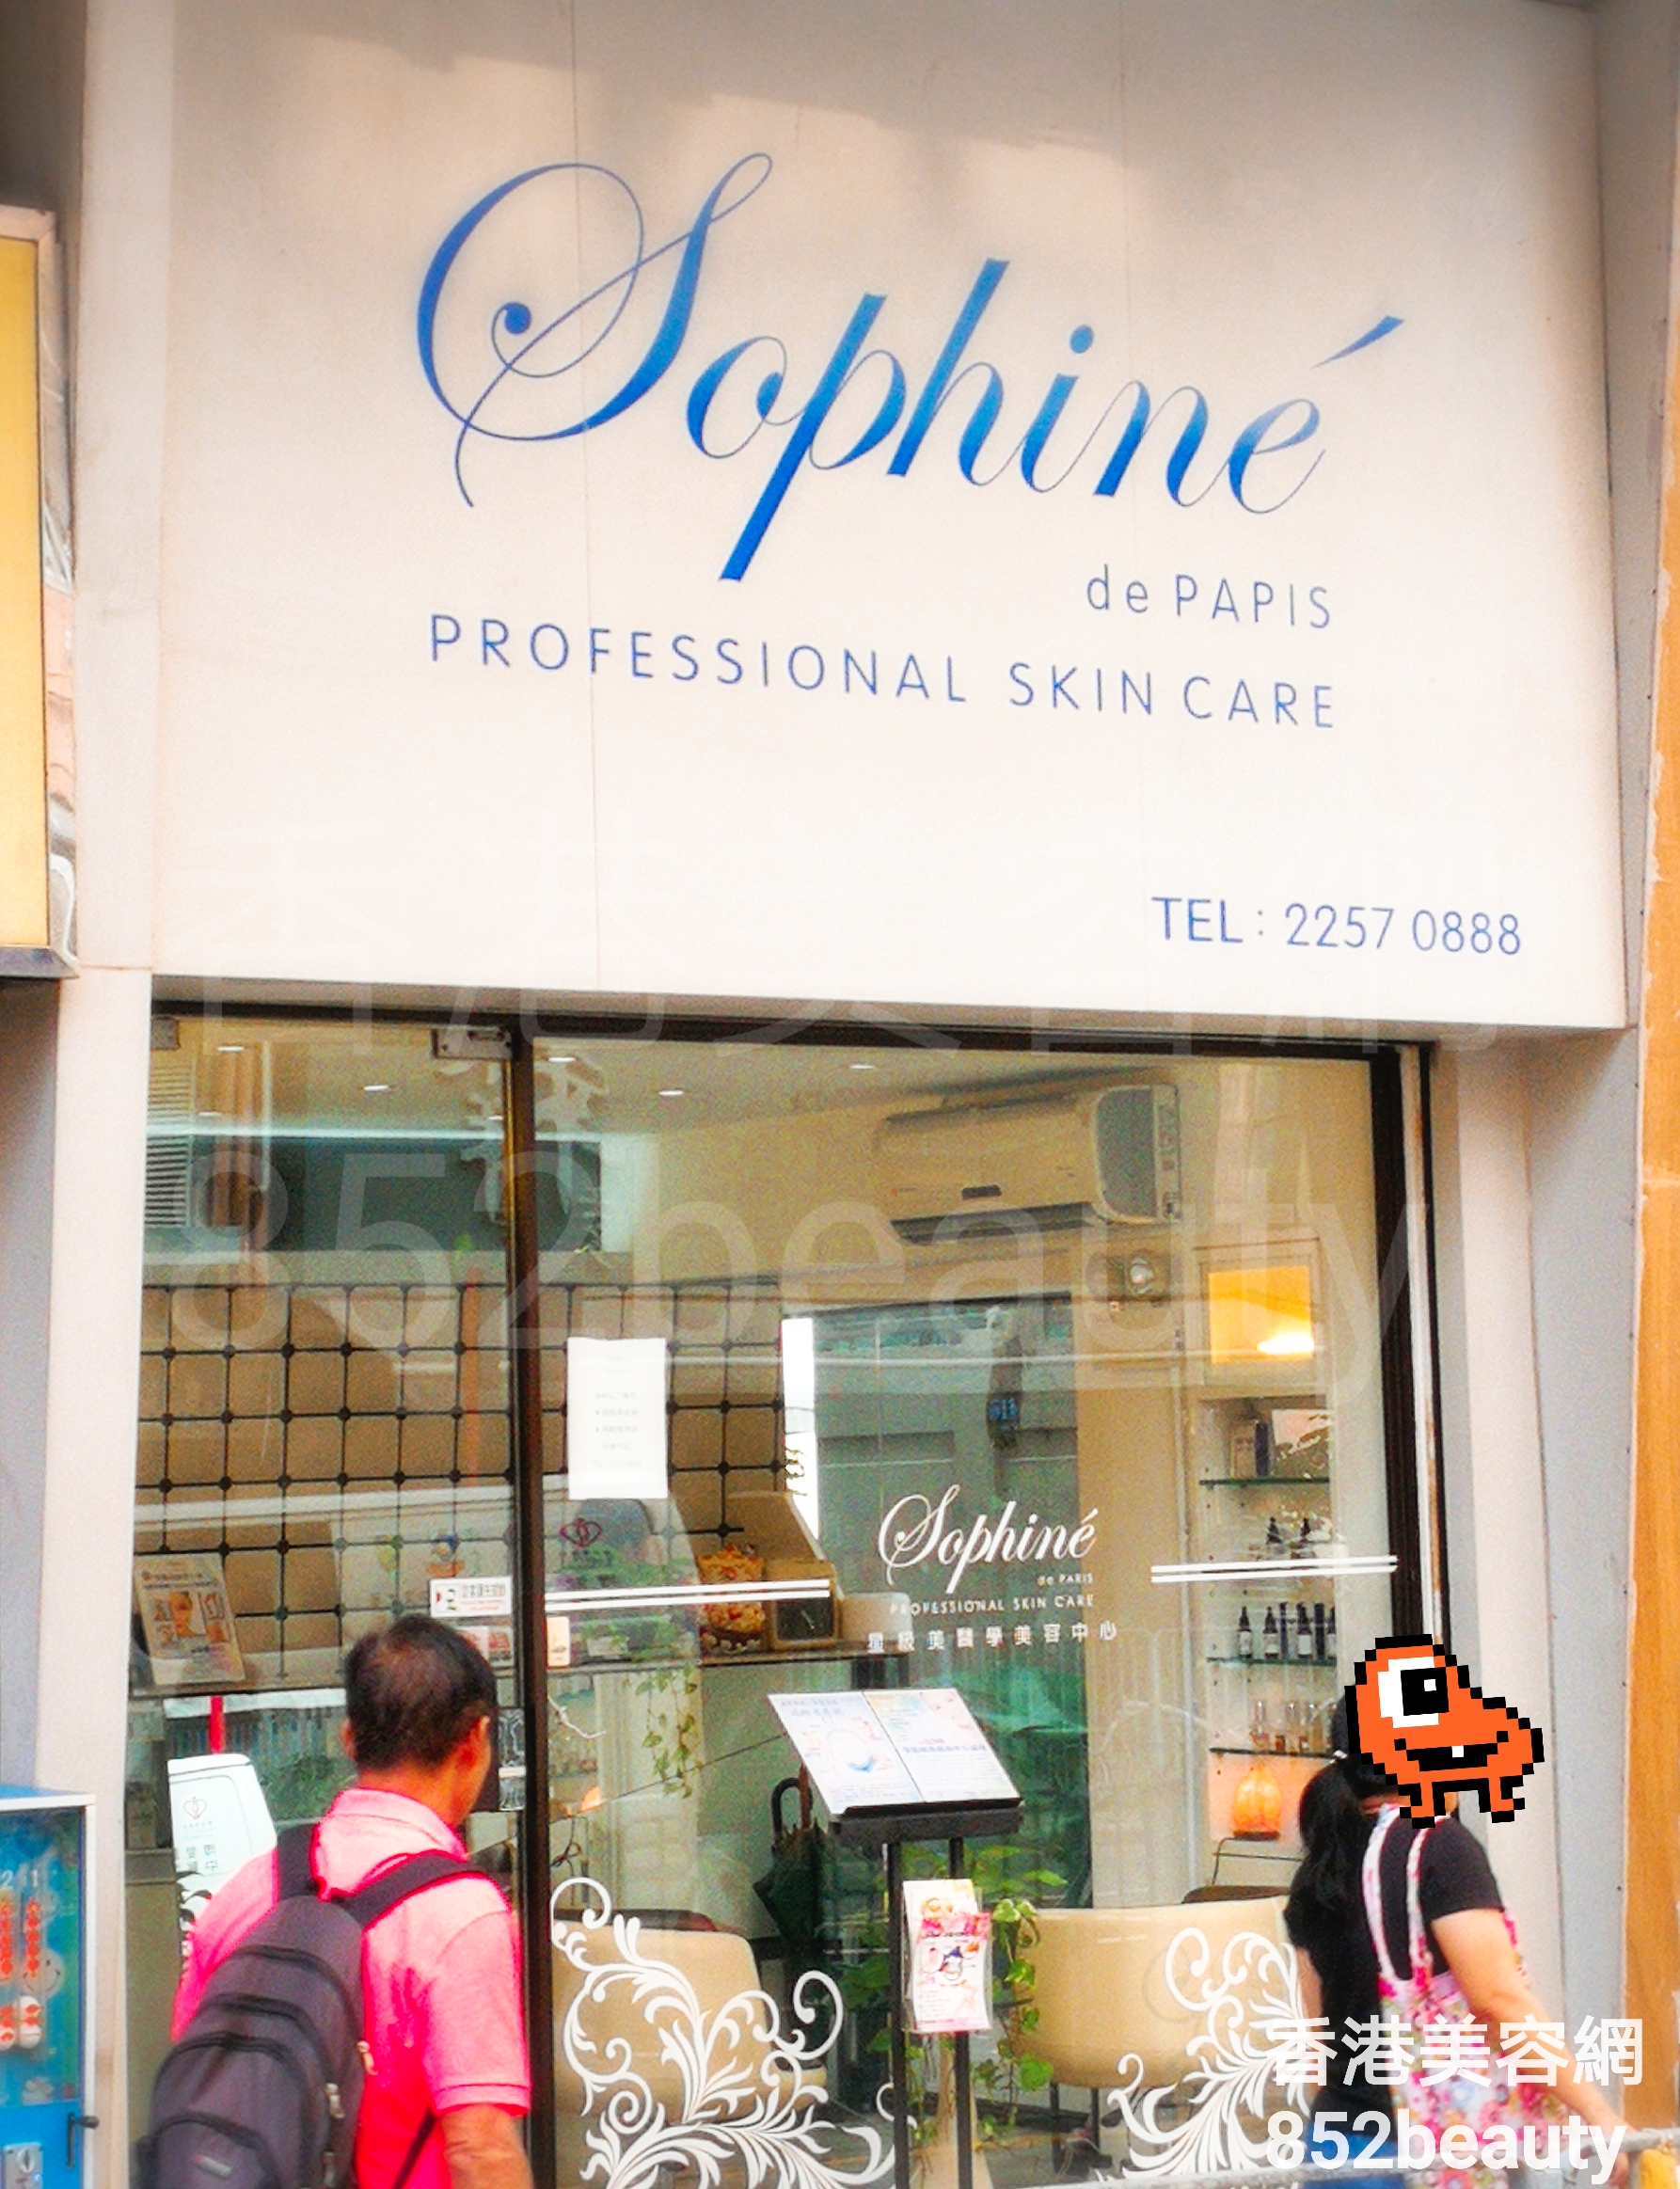 医学美容: Sophine de PARIS 星級美醫學美容中心